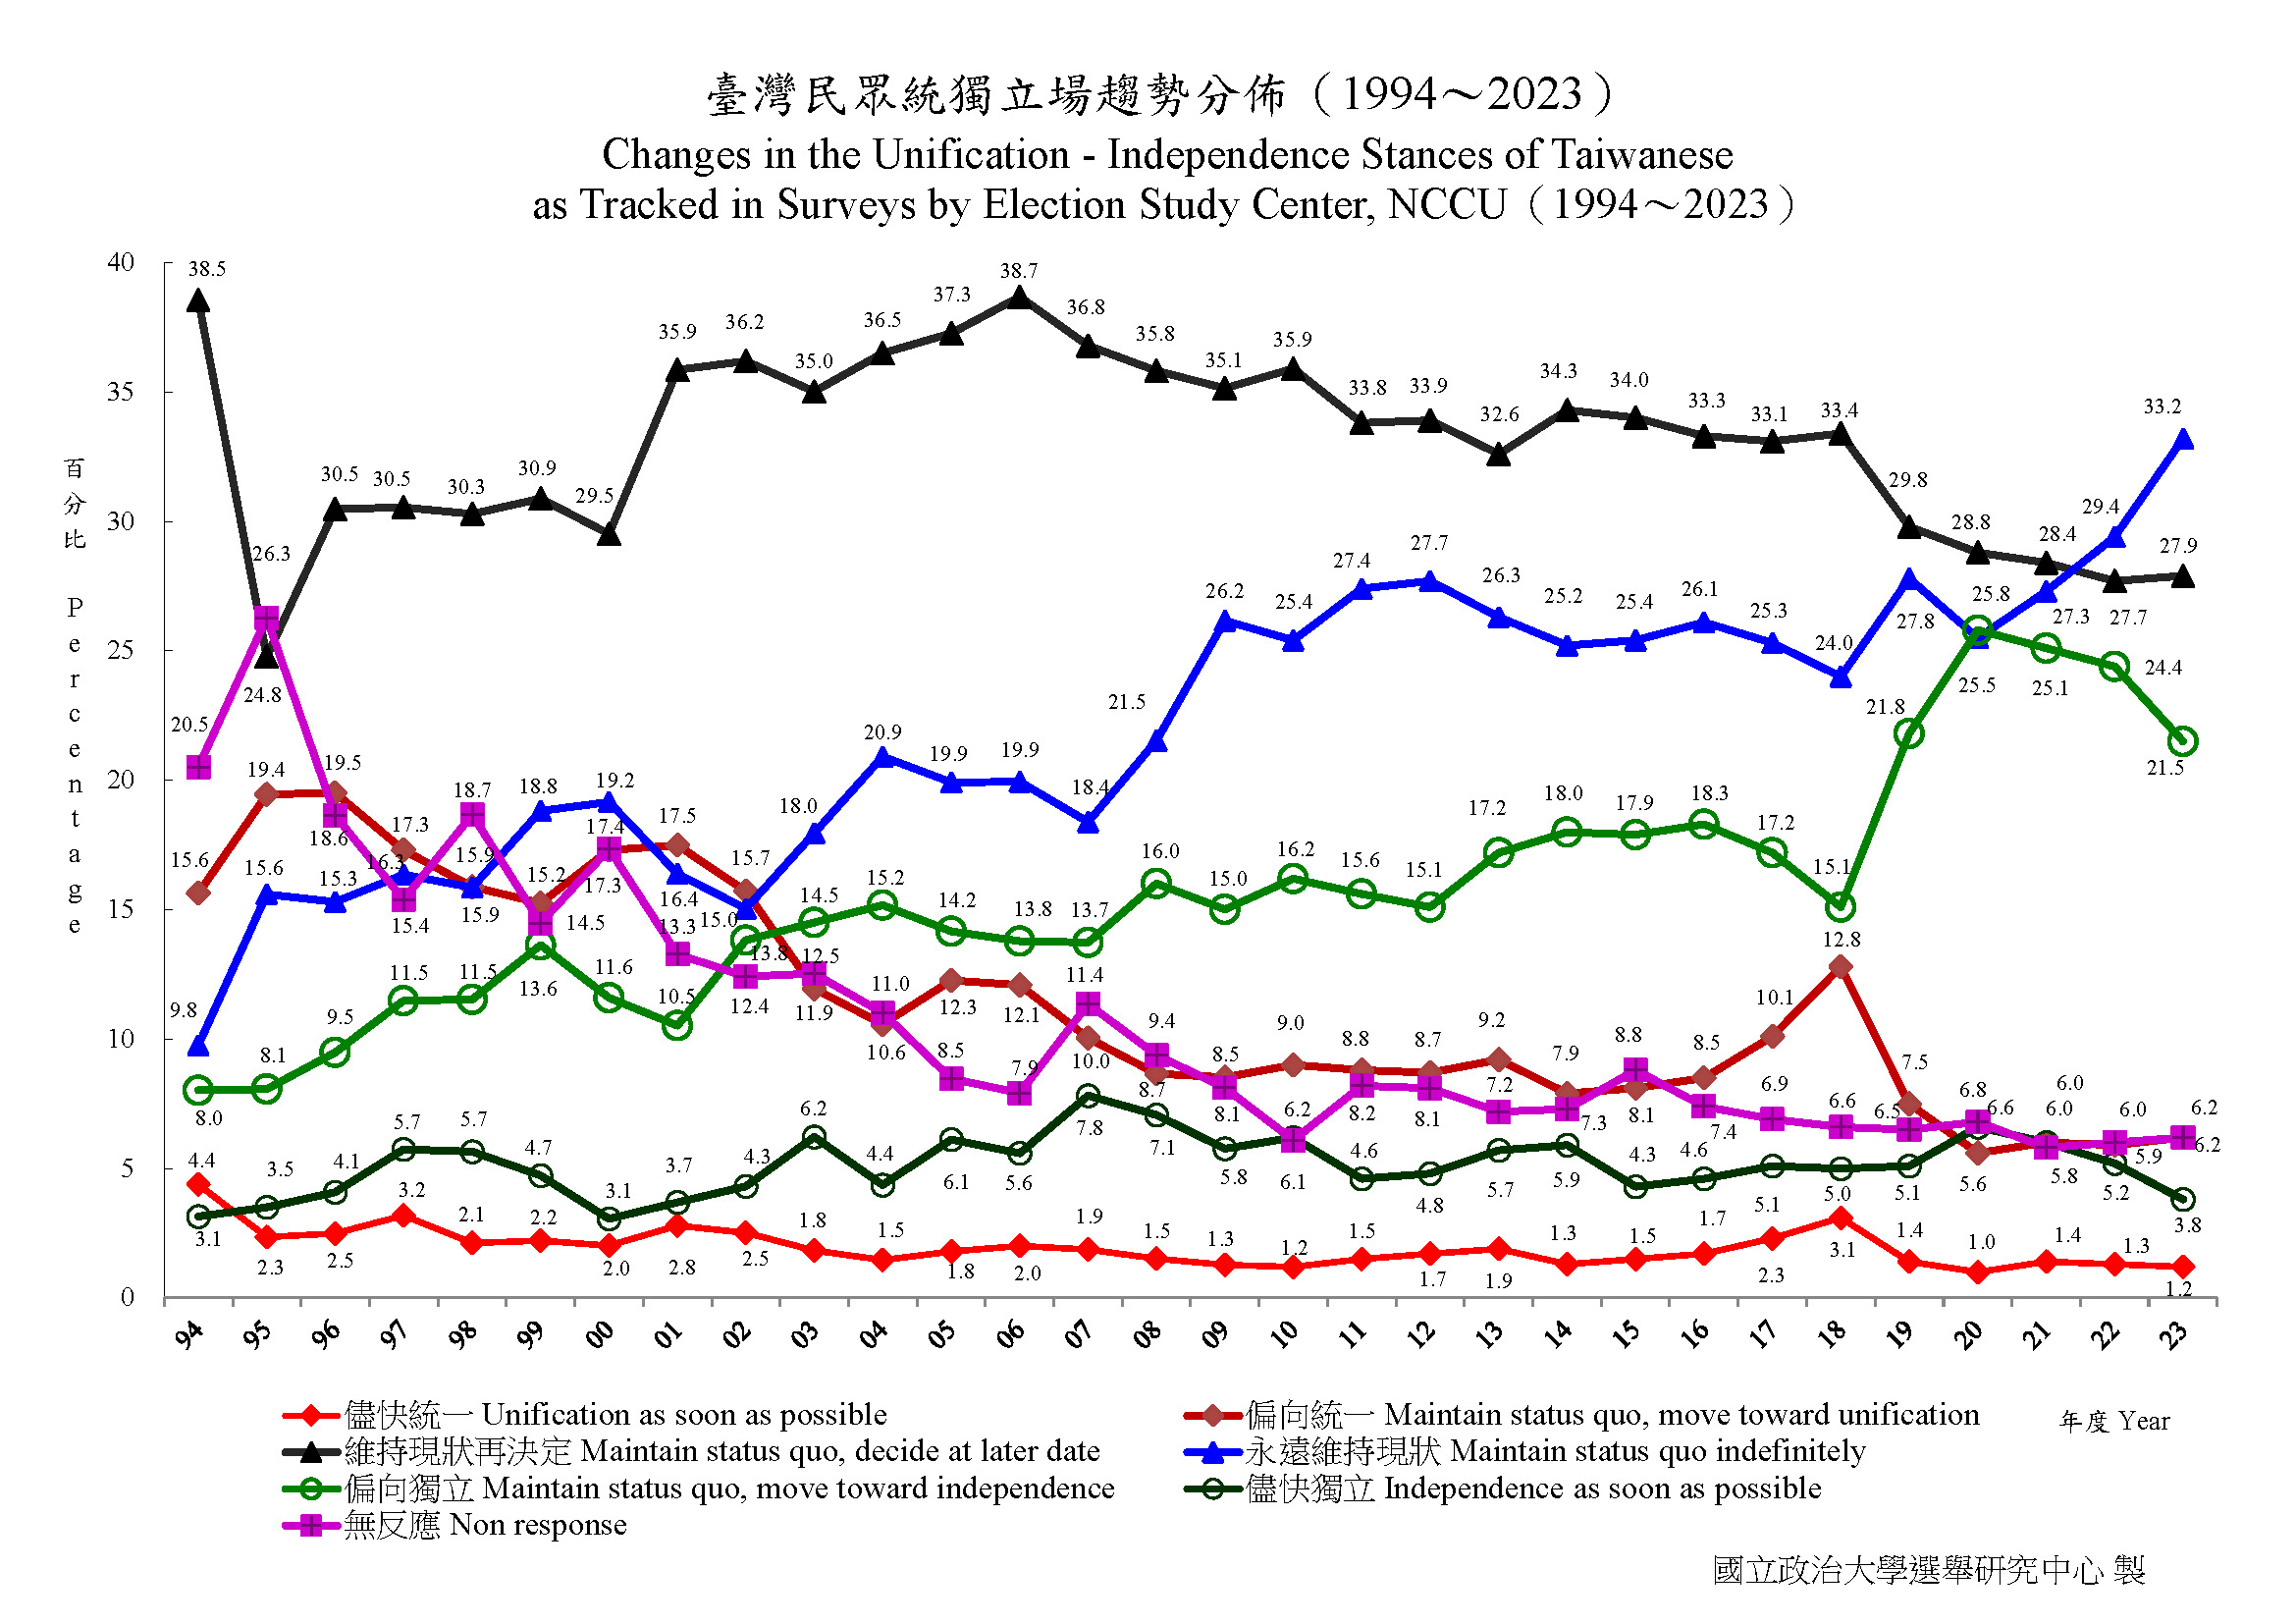 臺灣民眾統獨立場趨勢分佈(1994年12月~2023年12月)